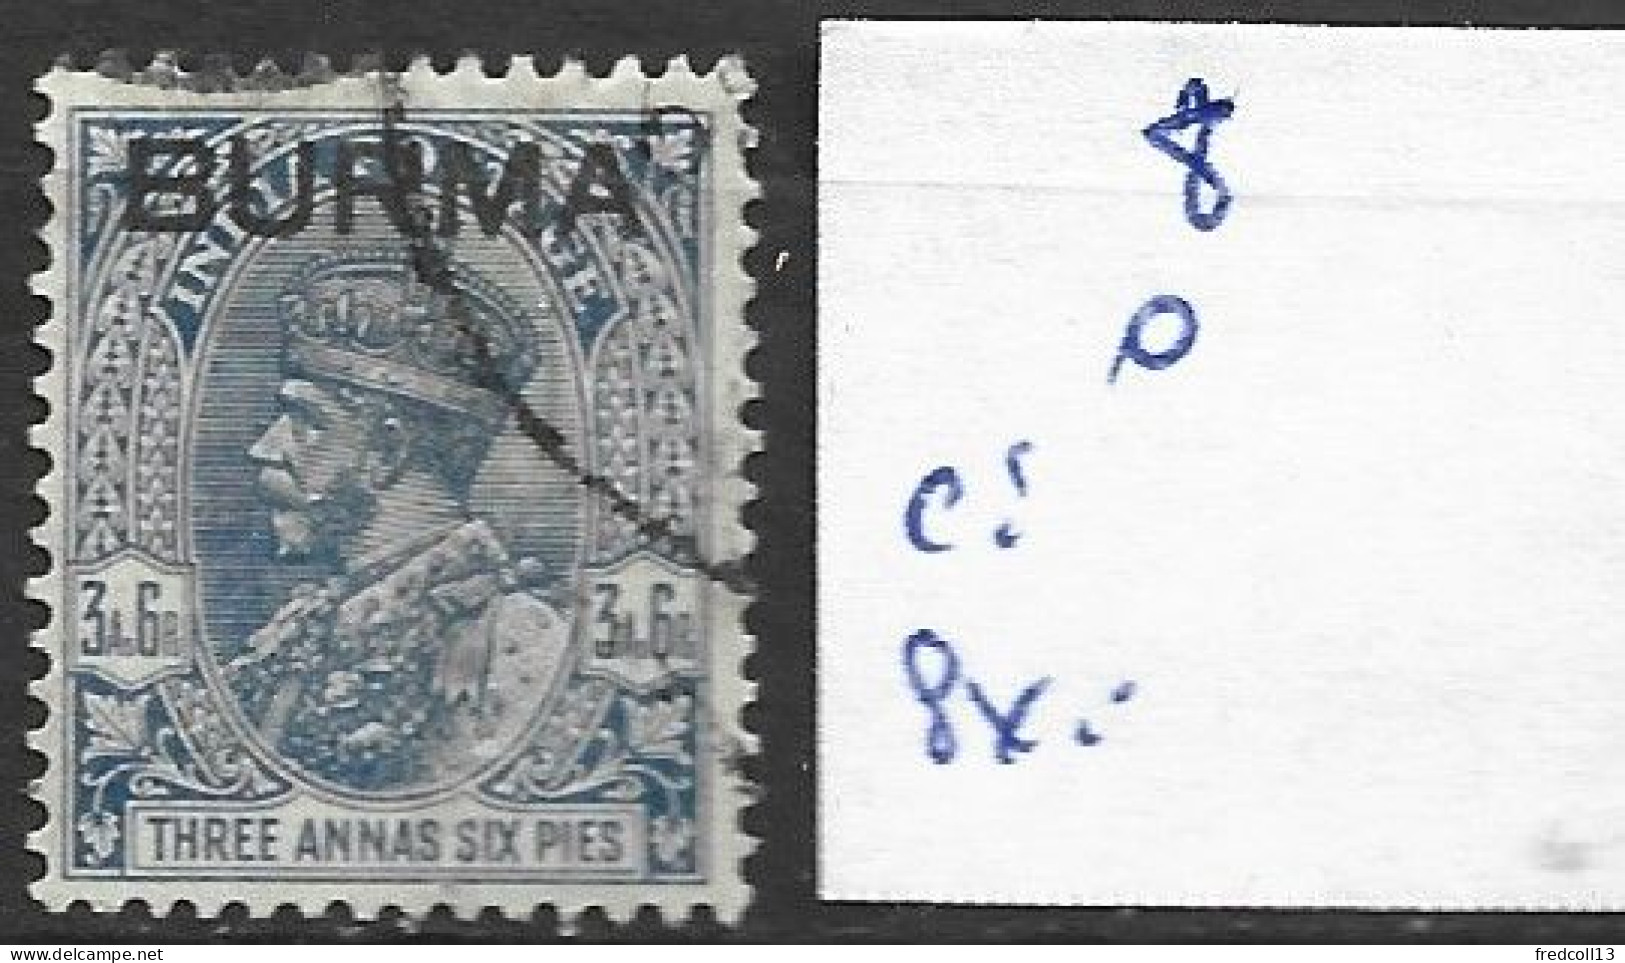 BIRMANIE 8 Oblitéré Côte 0.45 € - Burma (...-1947)